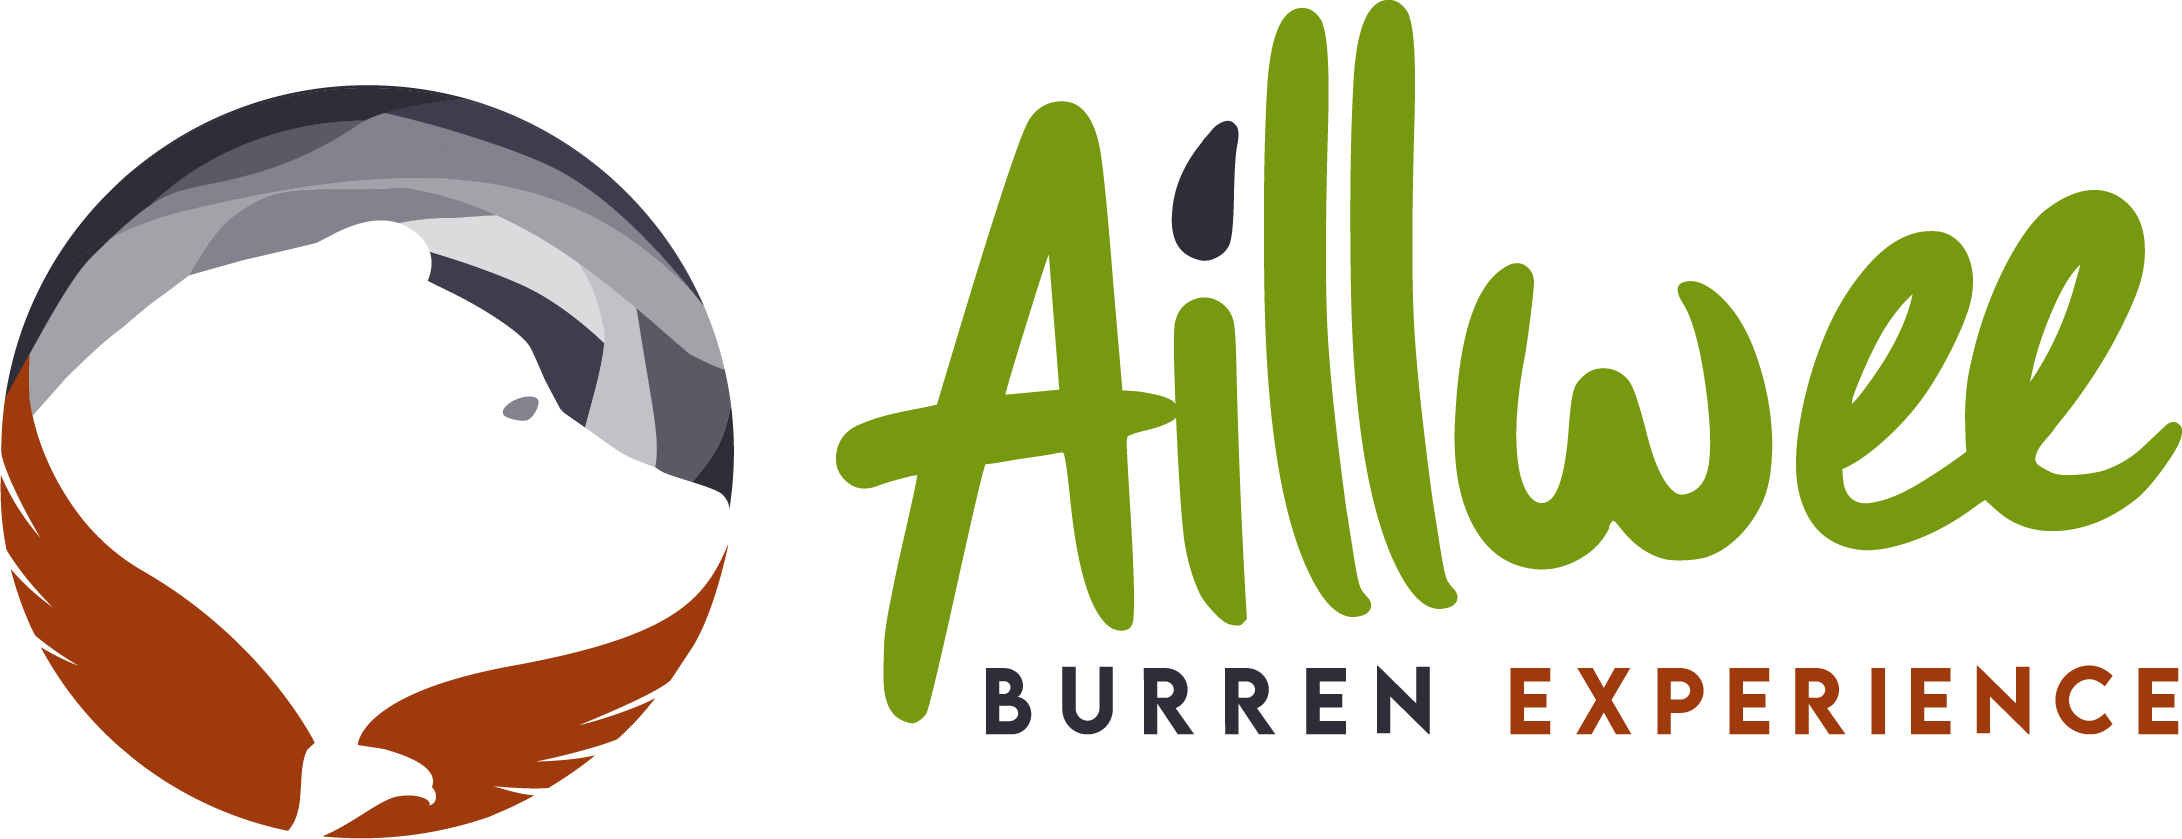 Ailwee Burren Experience